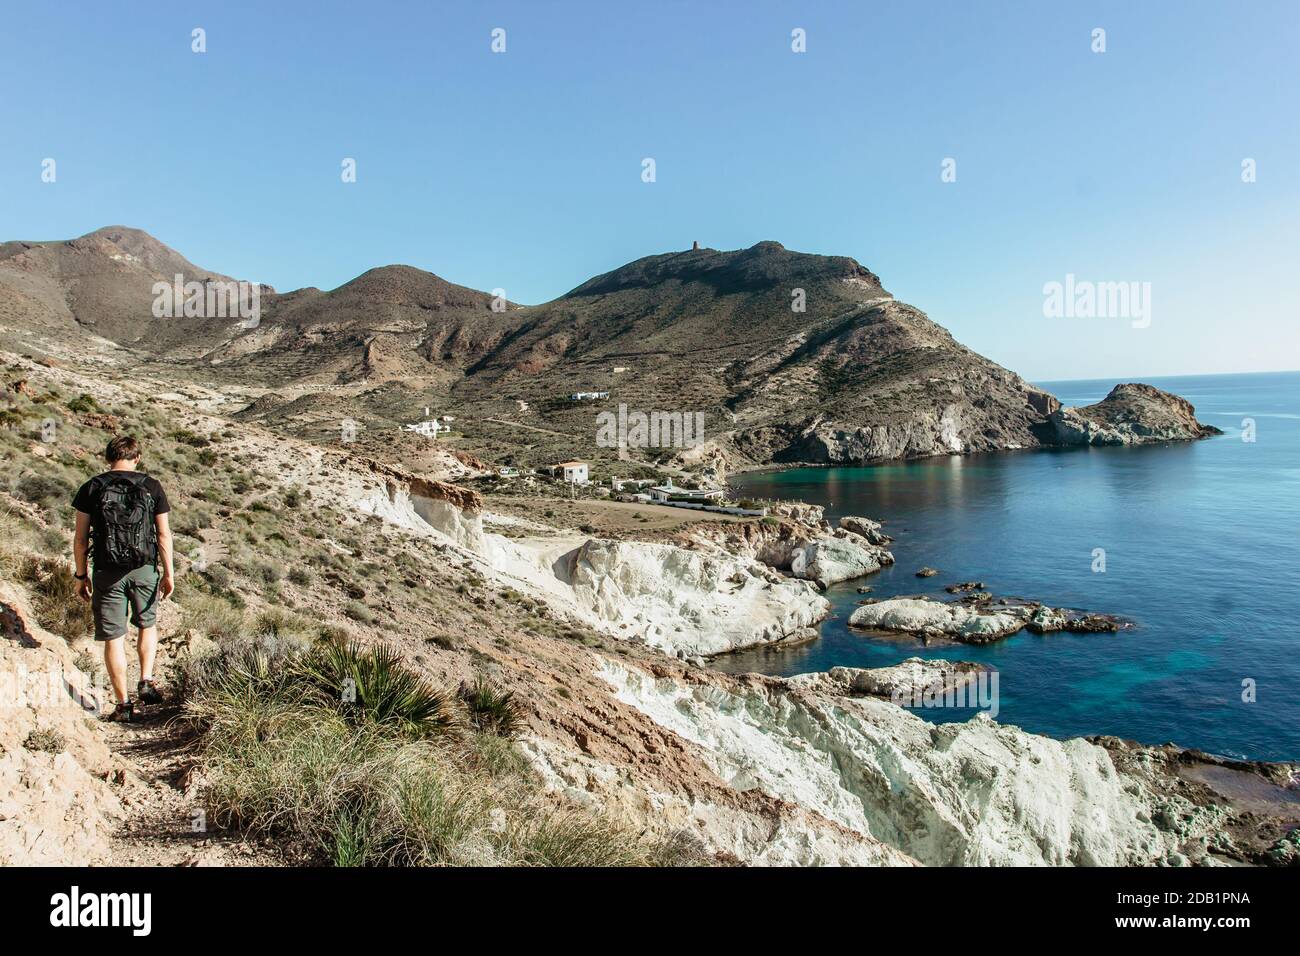 Solo uomo zaino in spalla escursionismo lungo la costa in Andalusia,Spain.Active sano Lifestyle.Majestic vista di spiaggia selvaggia, scogliere e mare.Beautiful mare Foto Stock